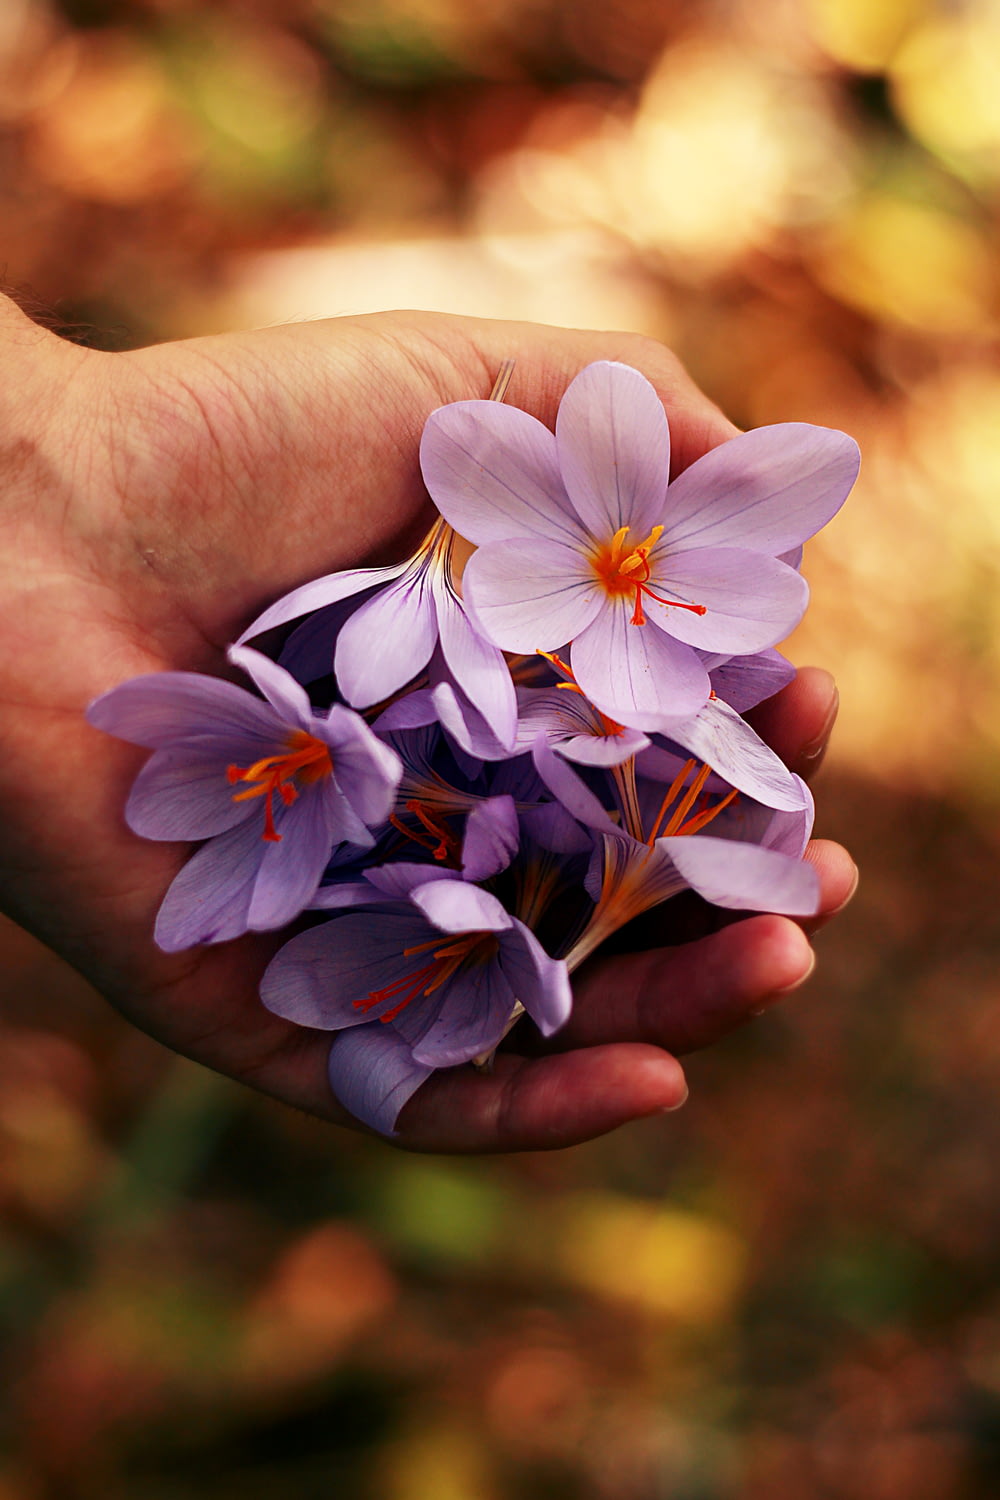 fiori dai petali viola sulla mano della persona